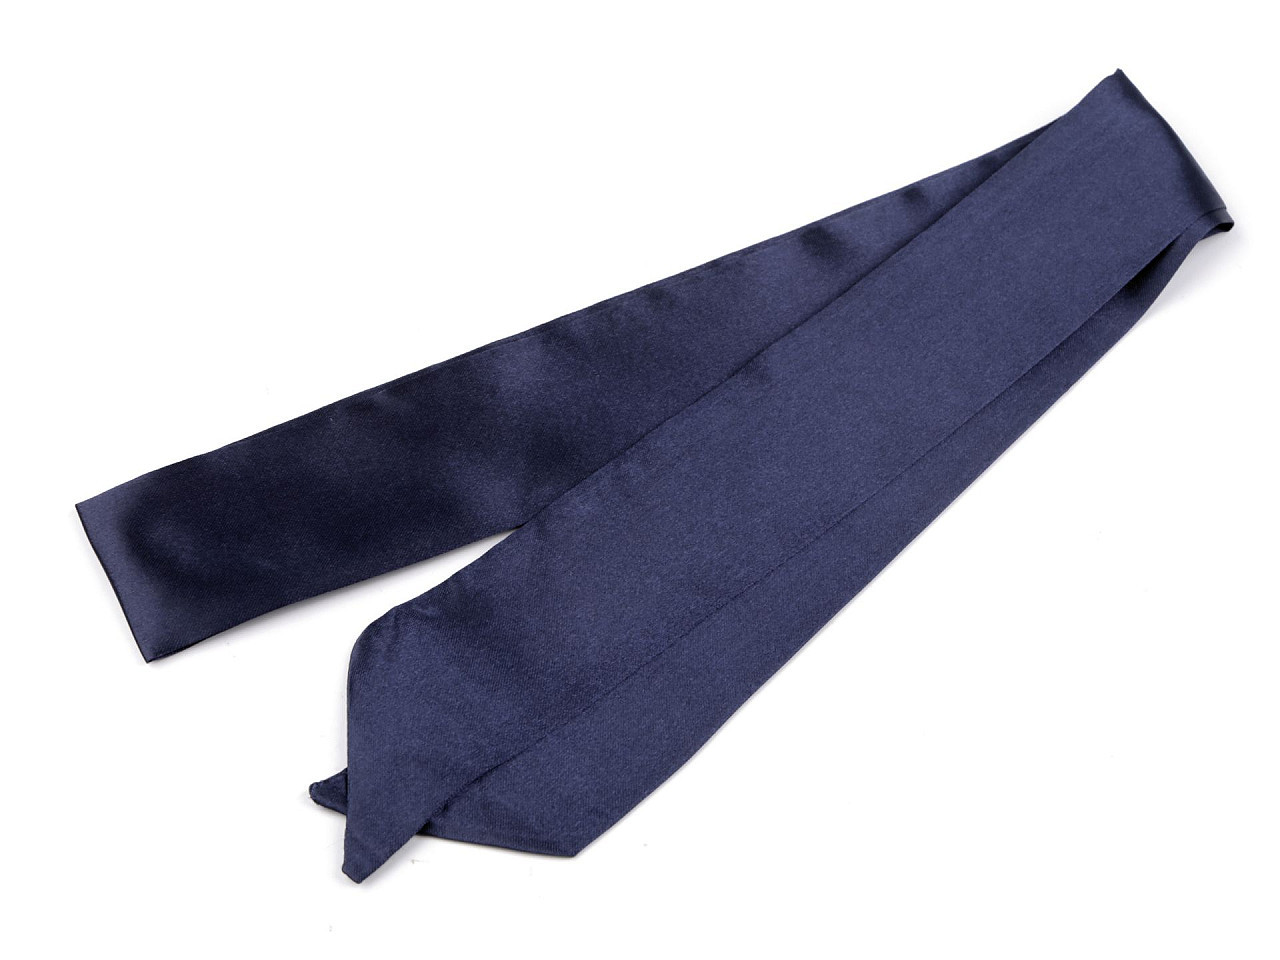 Šátek úzký do vlasů, na krk, na kabelku jednobarevný, s květy, barva 8 modrá tmavá